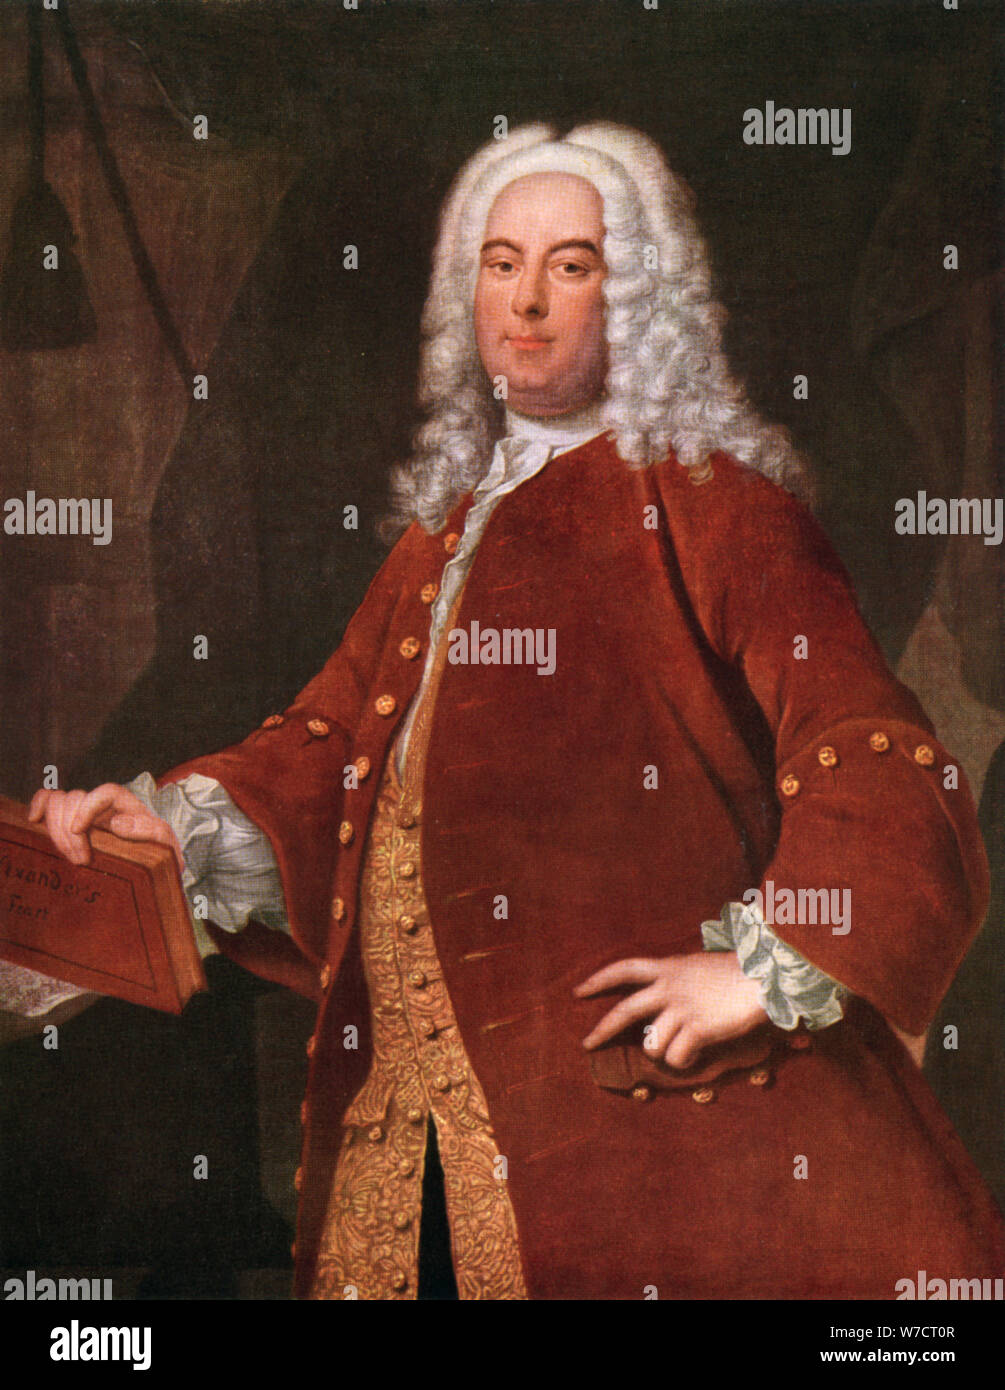 Georg Friedrich Händel (1685-1759), deutscher Komponist, c 1750. Artist: Thomas Hudson Stockfoto